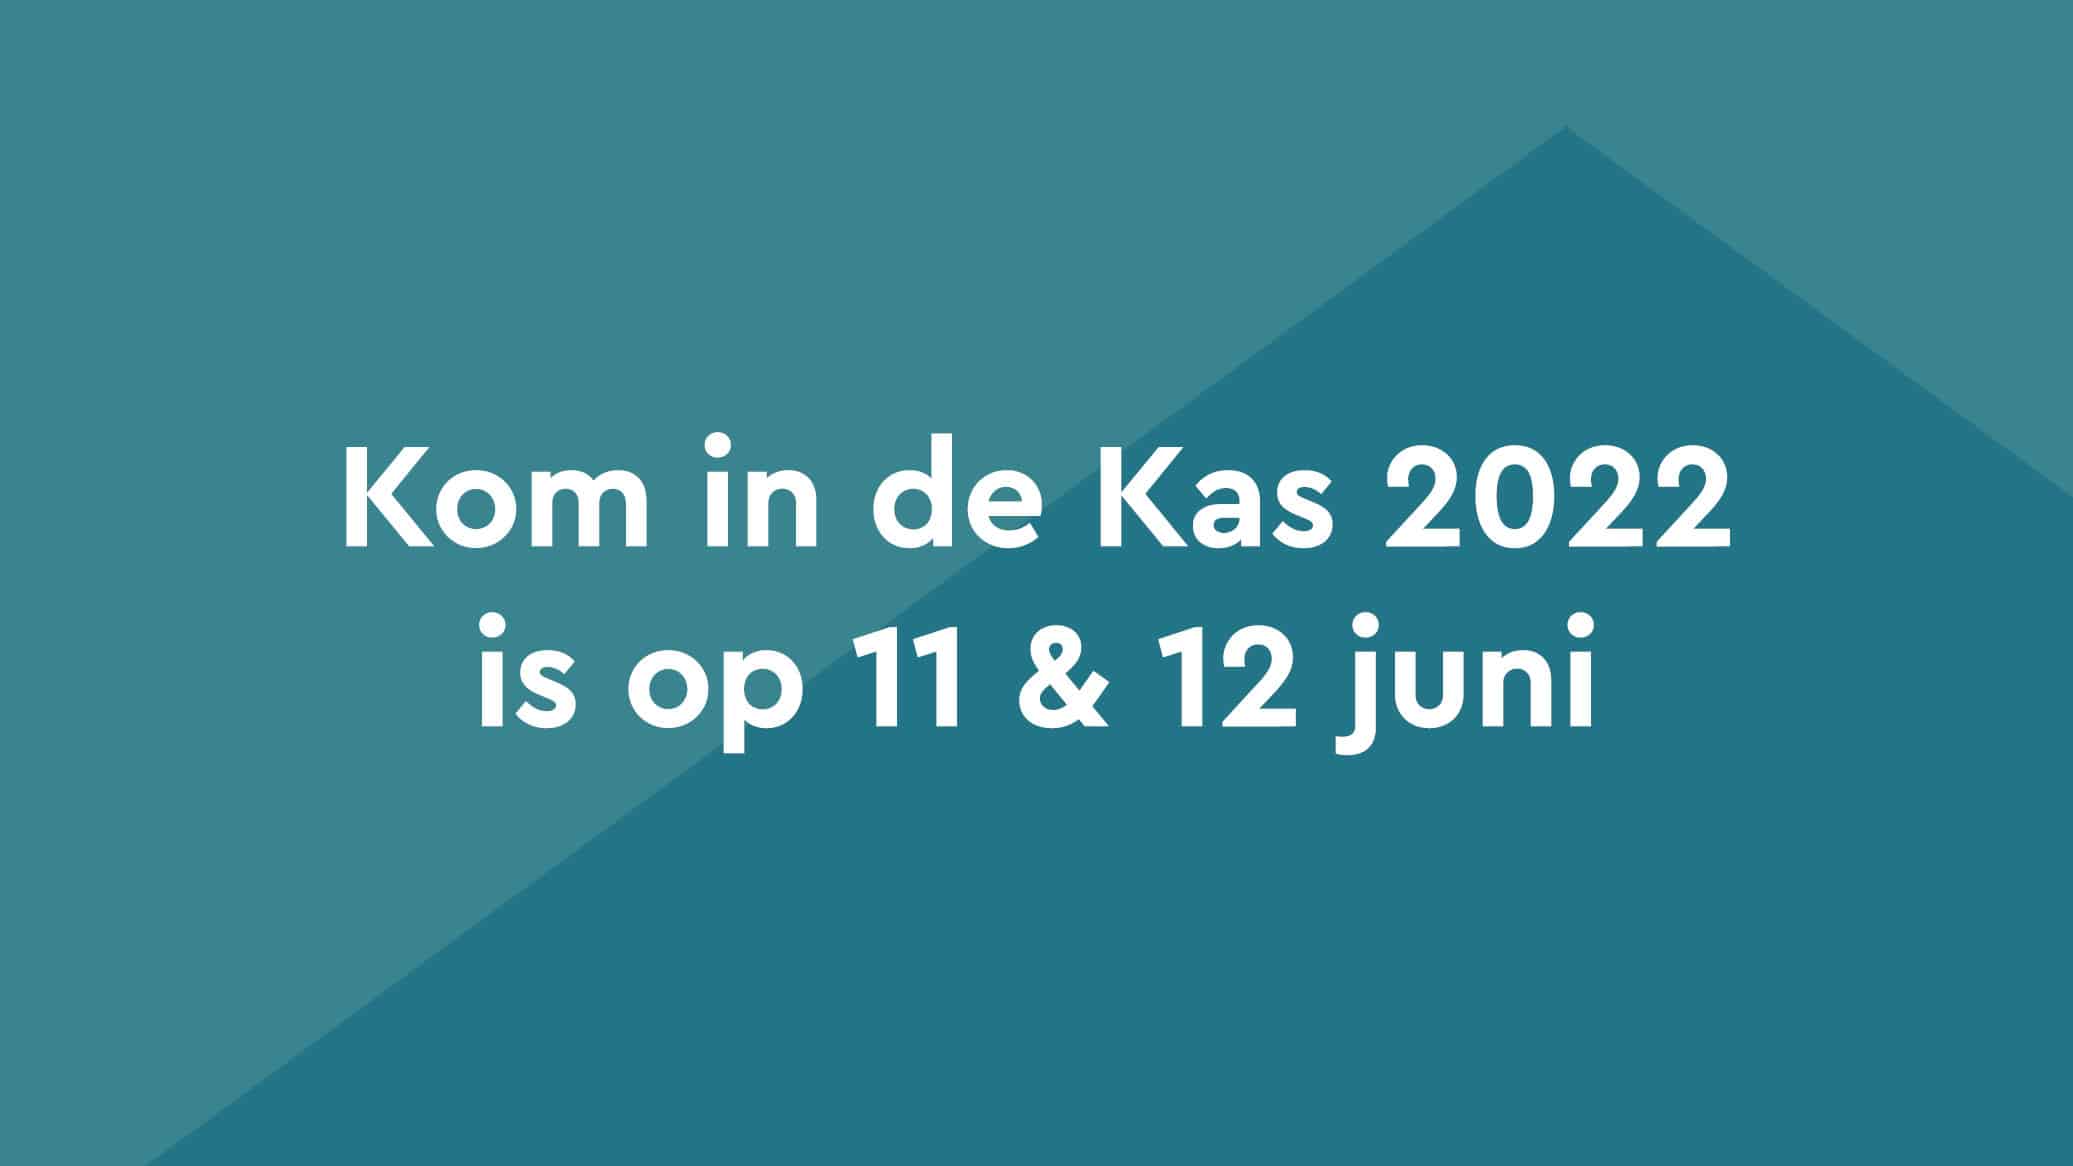 Kom in de Kas 2022 verplaatst naar 11 en 12 juni | Kom in de Kas